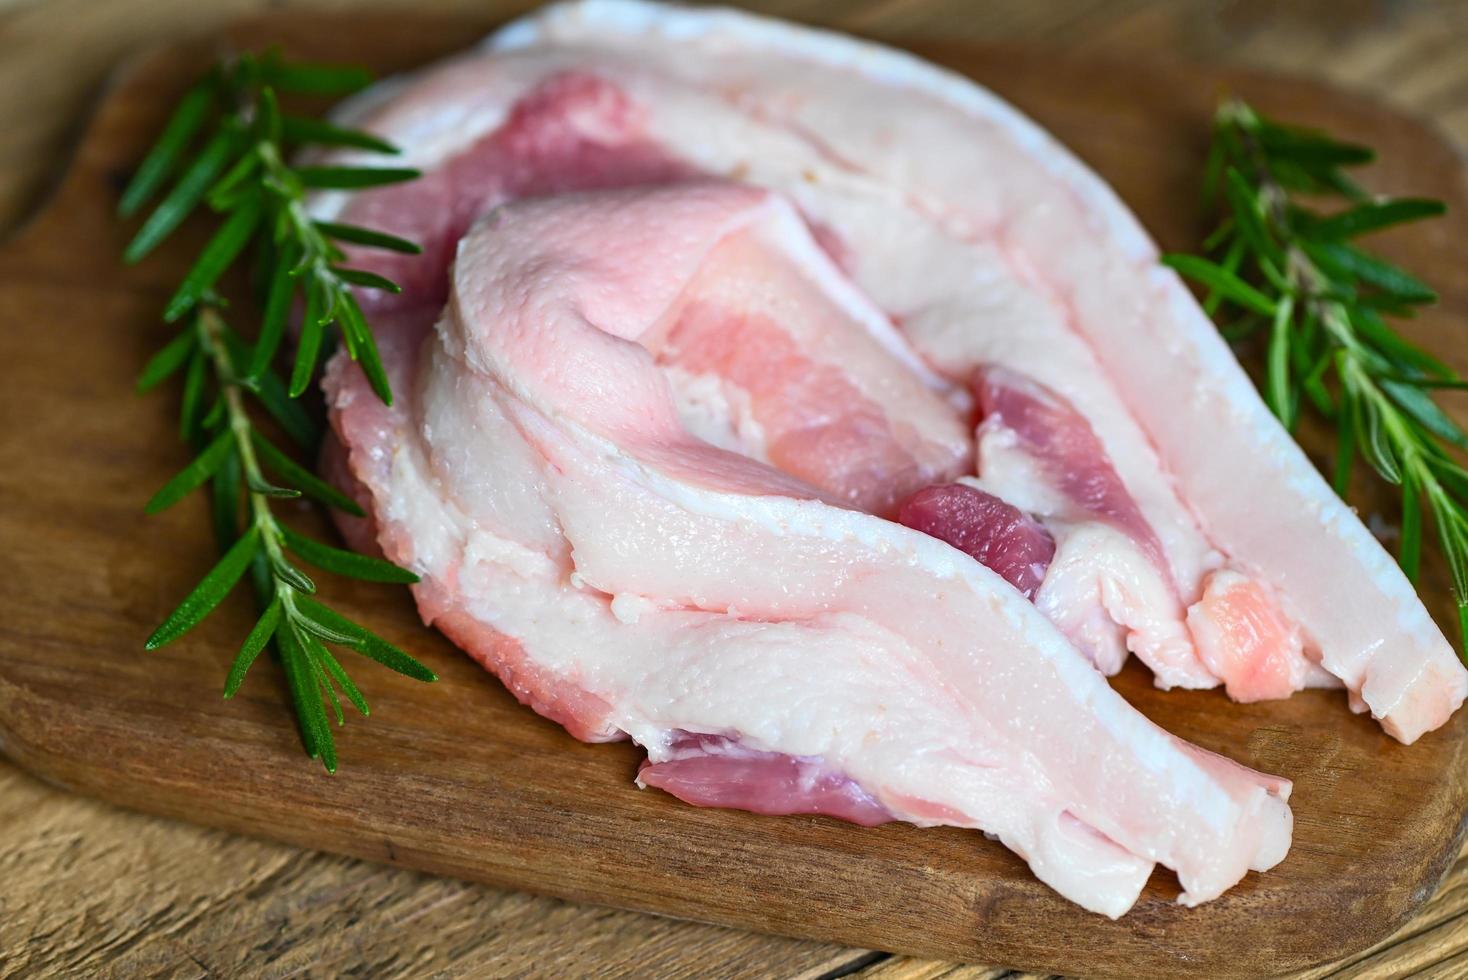 porc sur plaque de bois avec romarin, viande de porc striée crue fraîche pour la cuisson des aliments, peau de porc peau de porc - vue de dessus photo